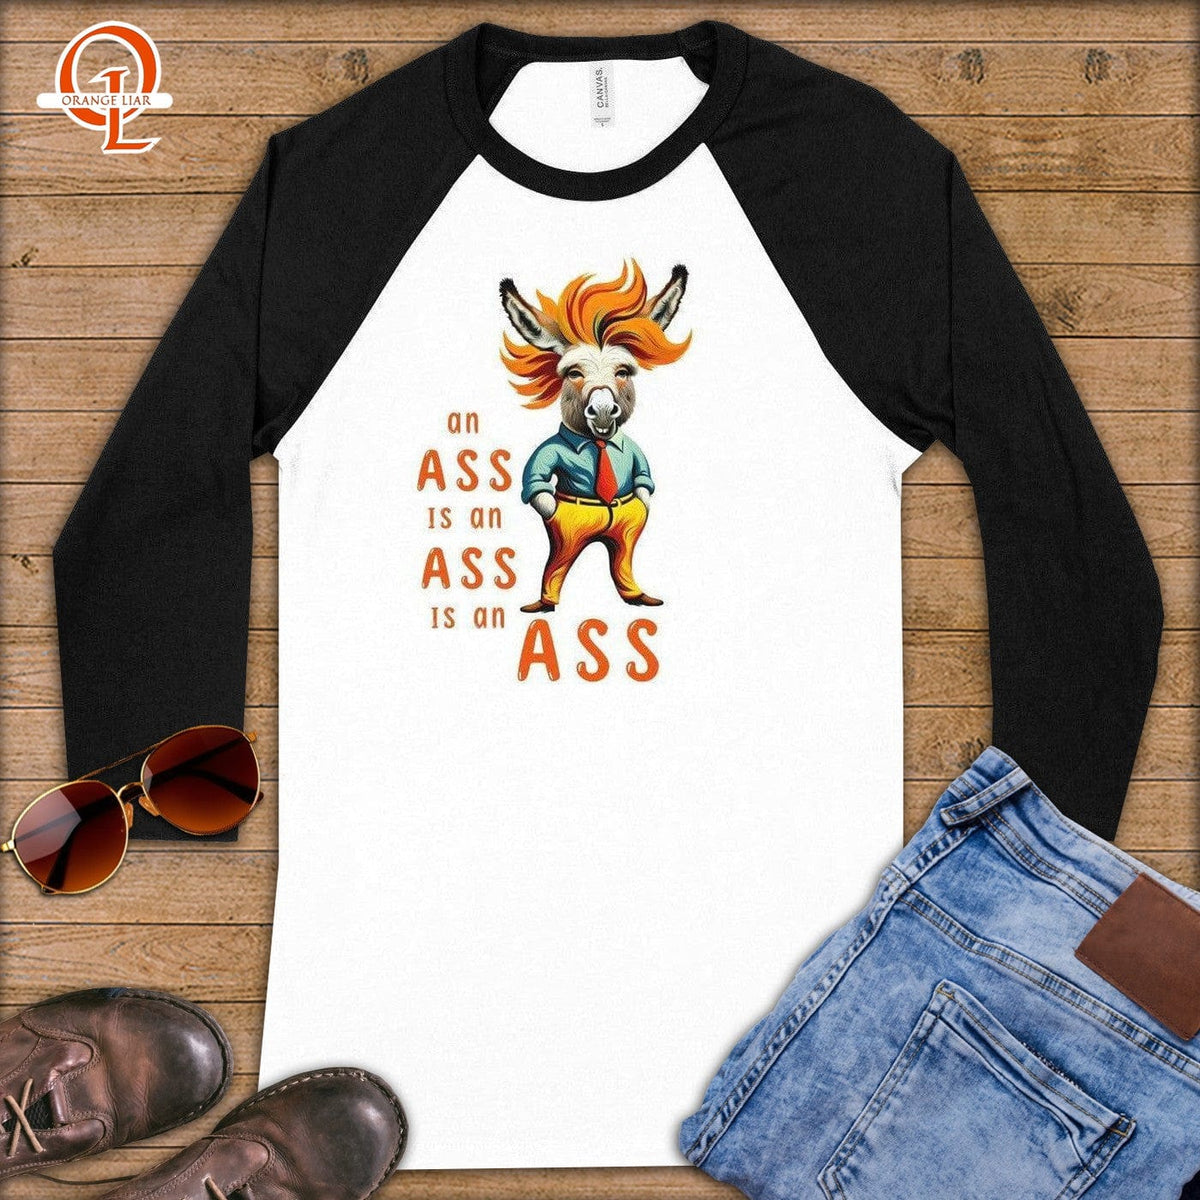 An Ass is an Ass is an Ass ~ Baseball 3/4 Sleeve Tee-Orange Liar